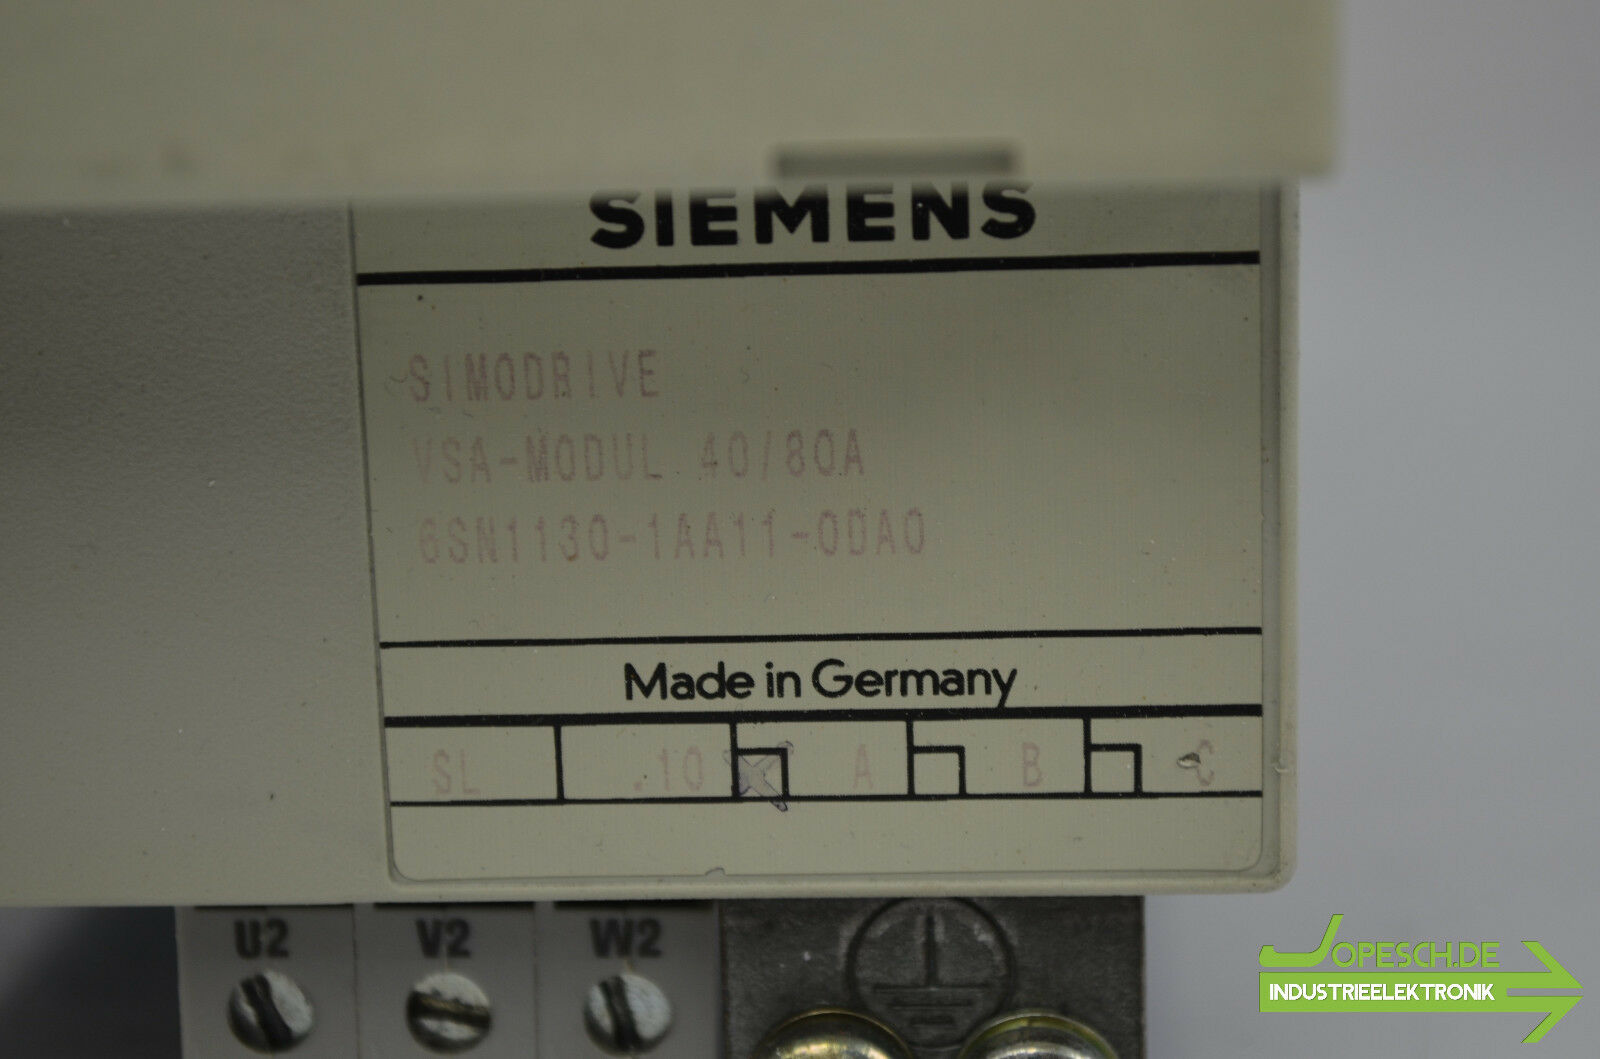 Siemens simodrive VSA-Modul 40/80A 6SN1130-1AA11-0DA0 ( 6SN1 130-1AA11-0DA0 )